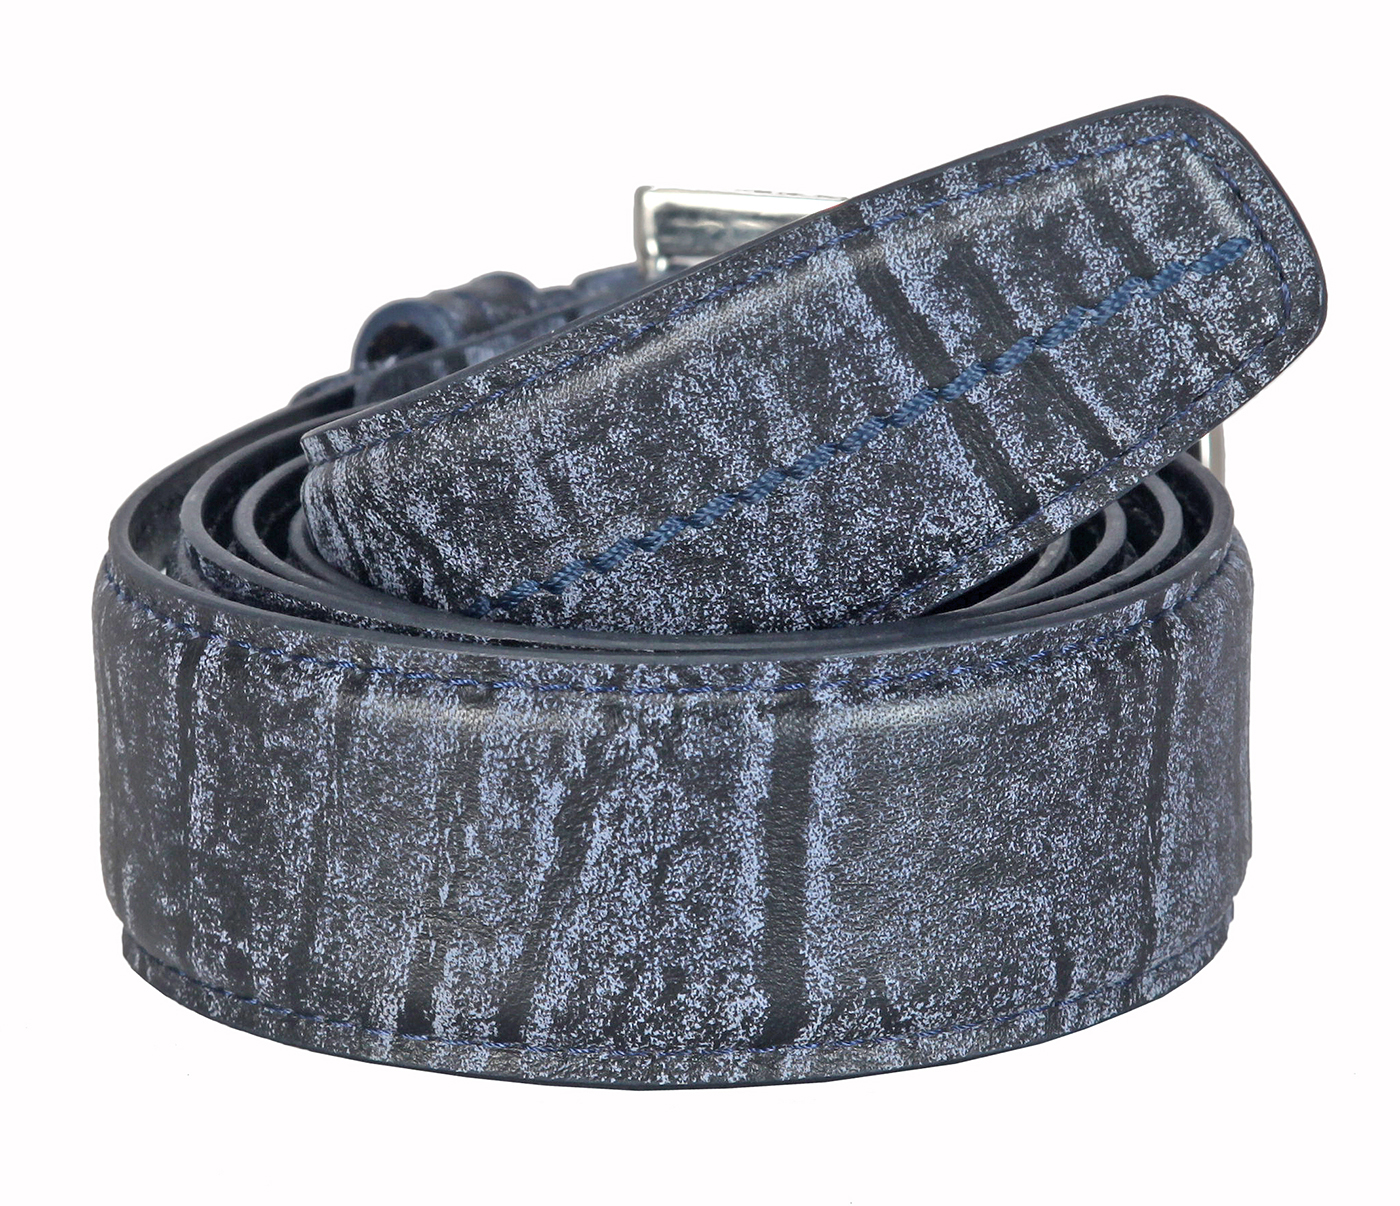 BL167--Men's stylish Casual wear belt in Genuine Leather - Black